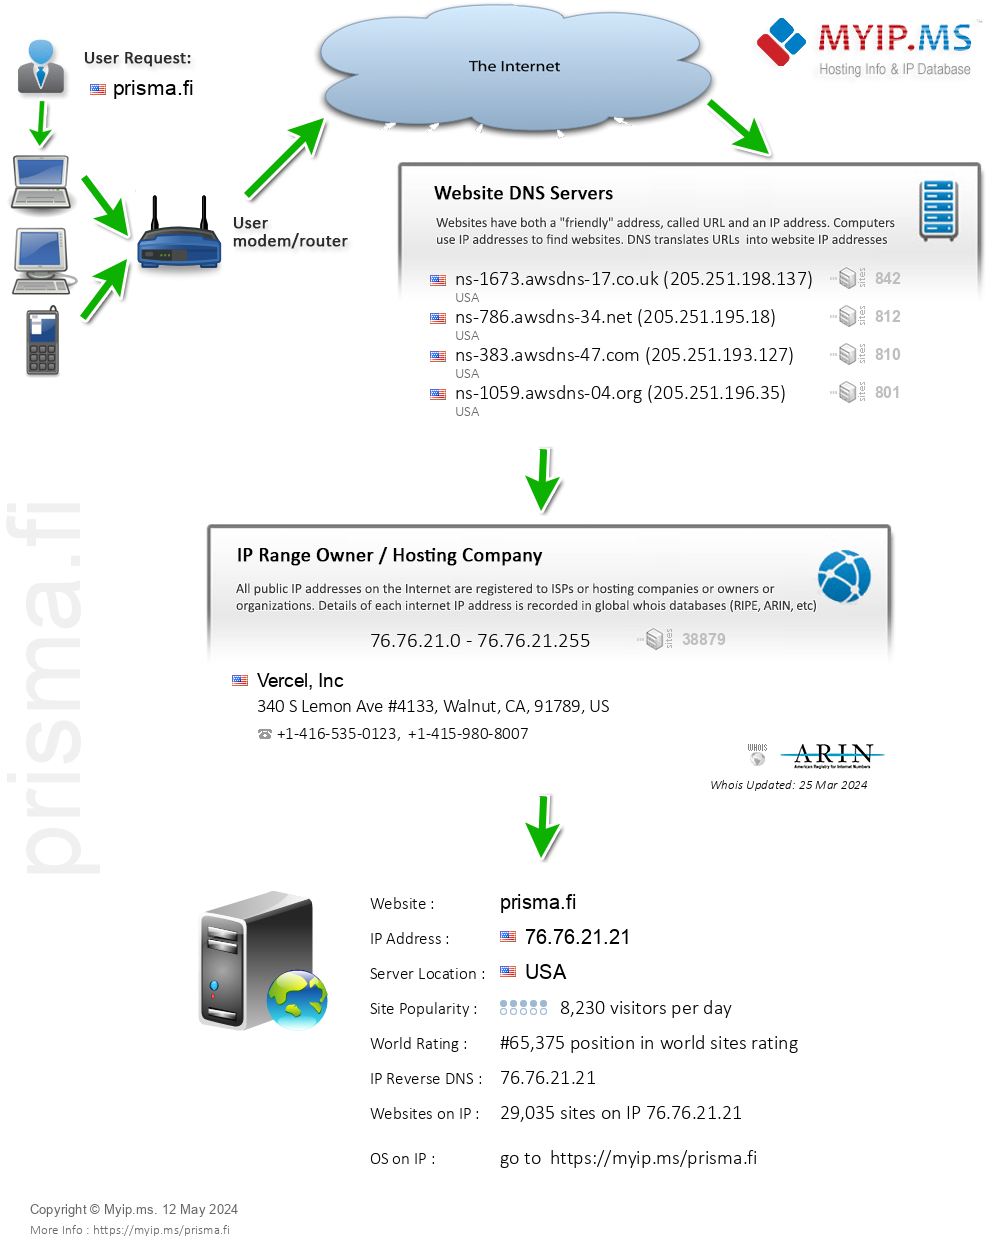 Prisma.fi - Website Hosting Visual IP Diagram